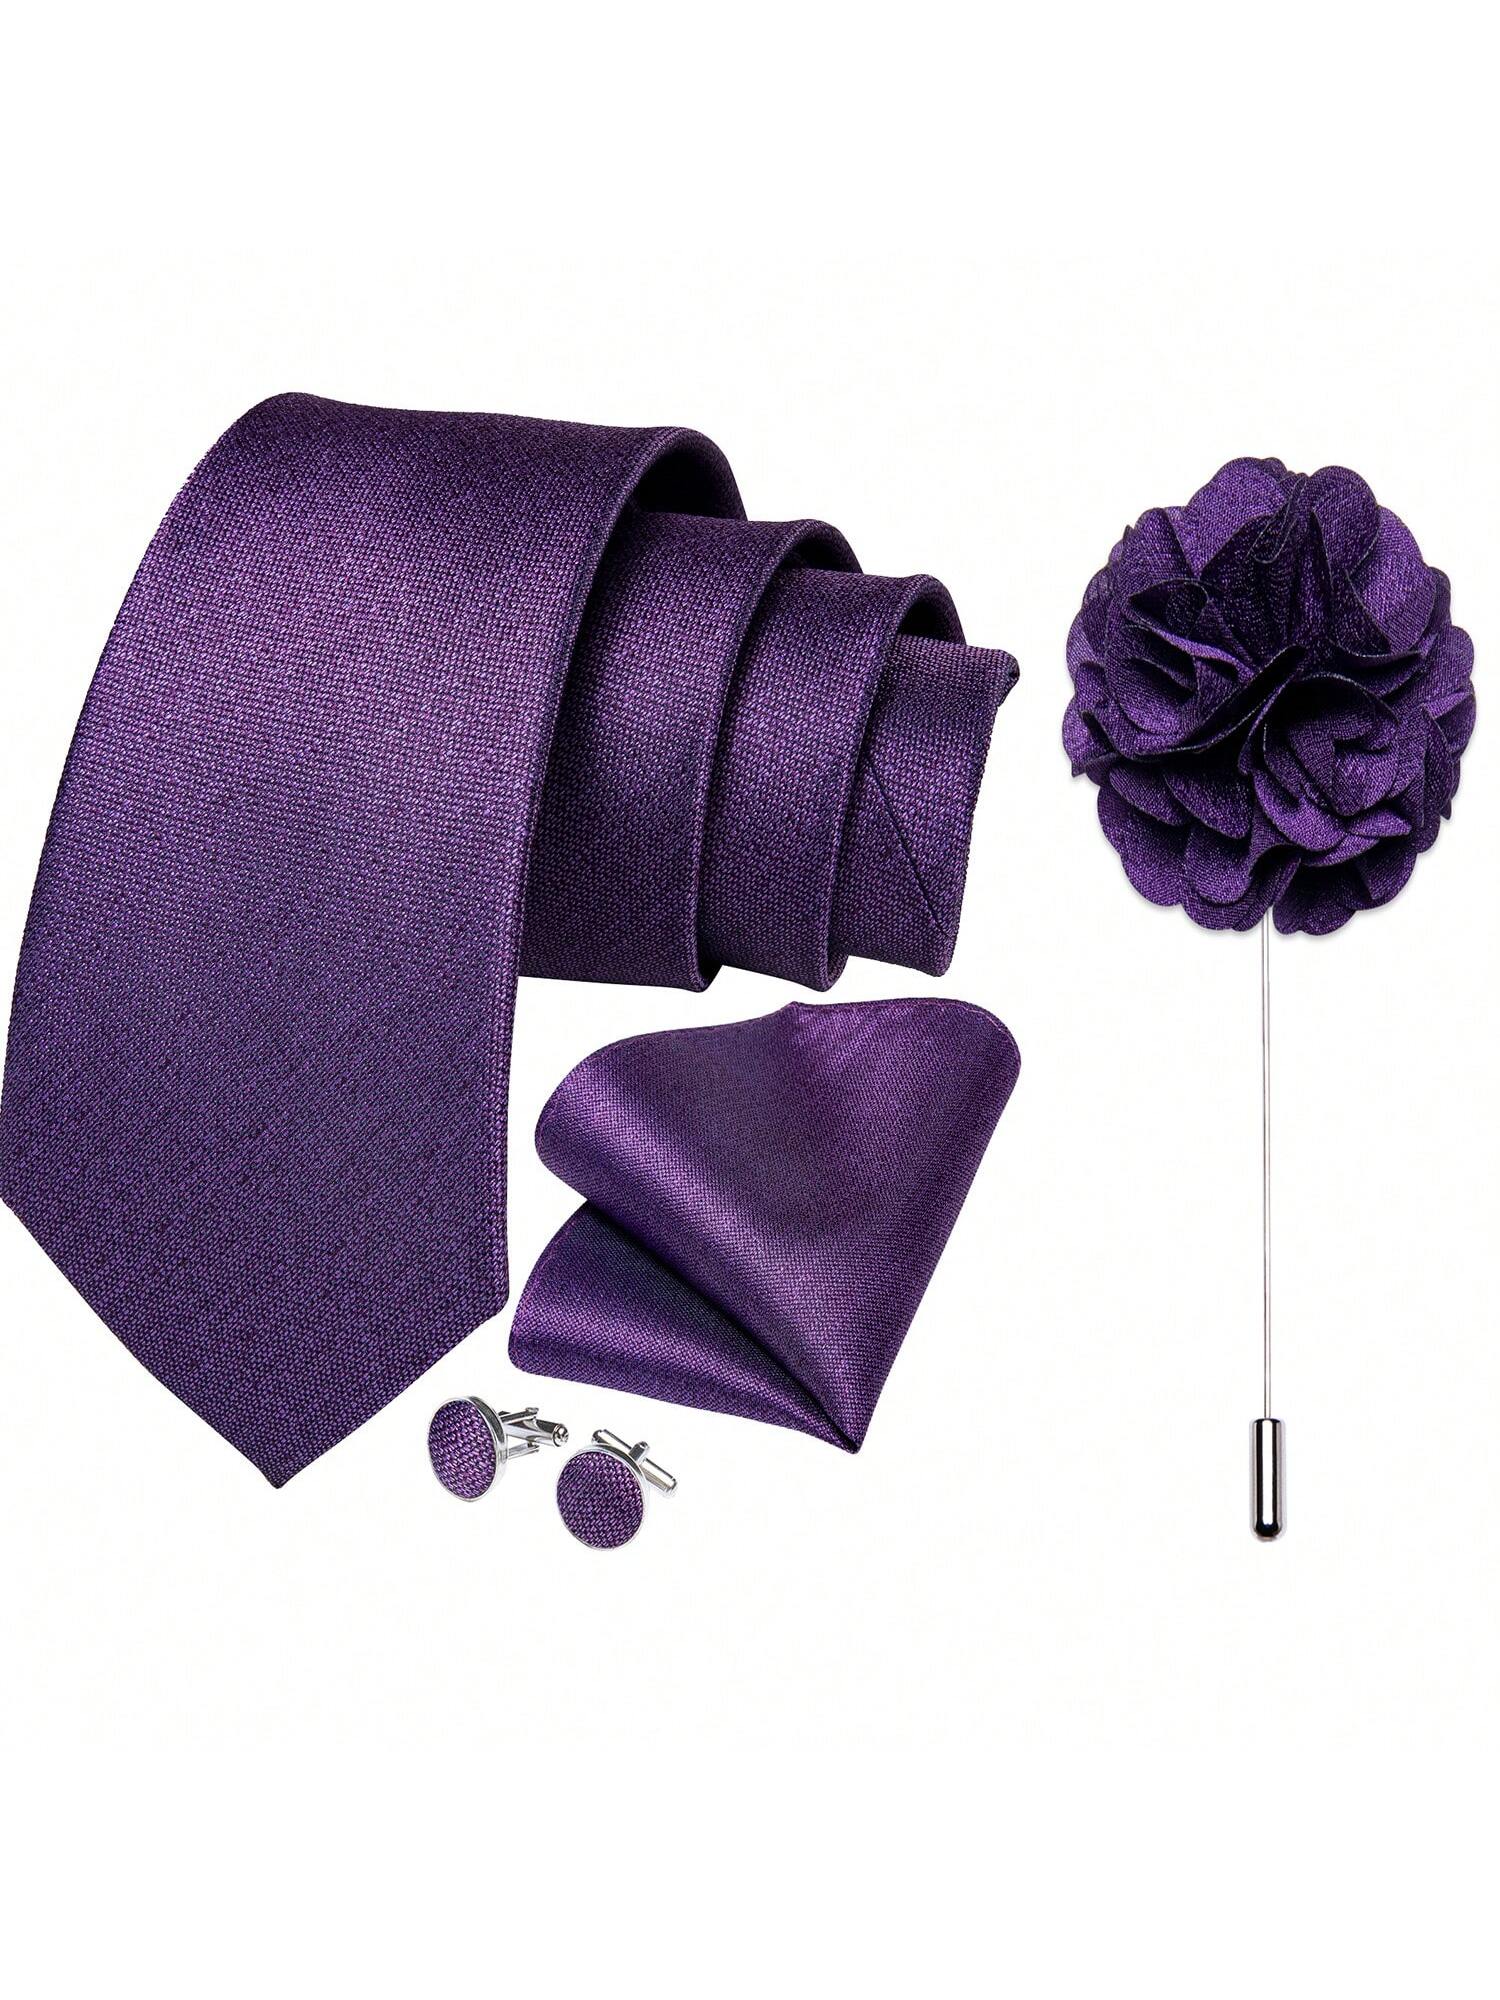 DiBanGu мужские галстуки, фиолетовый